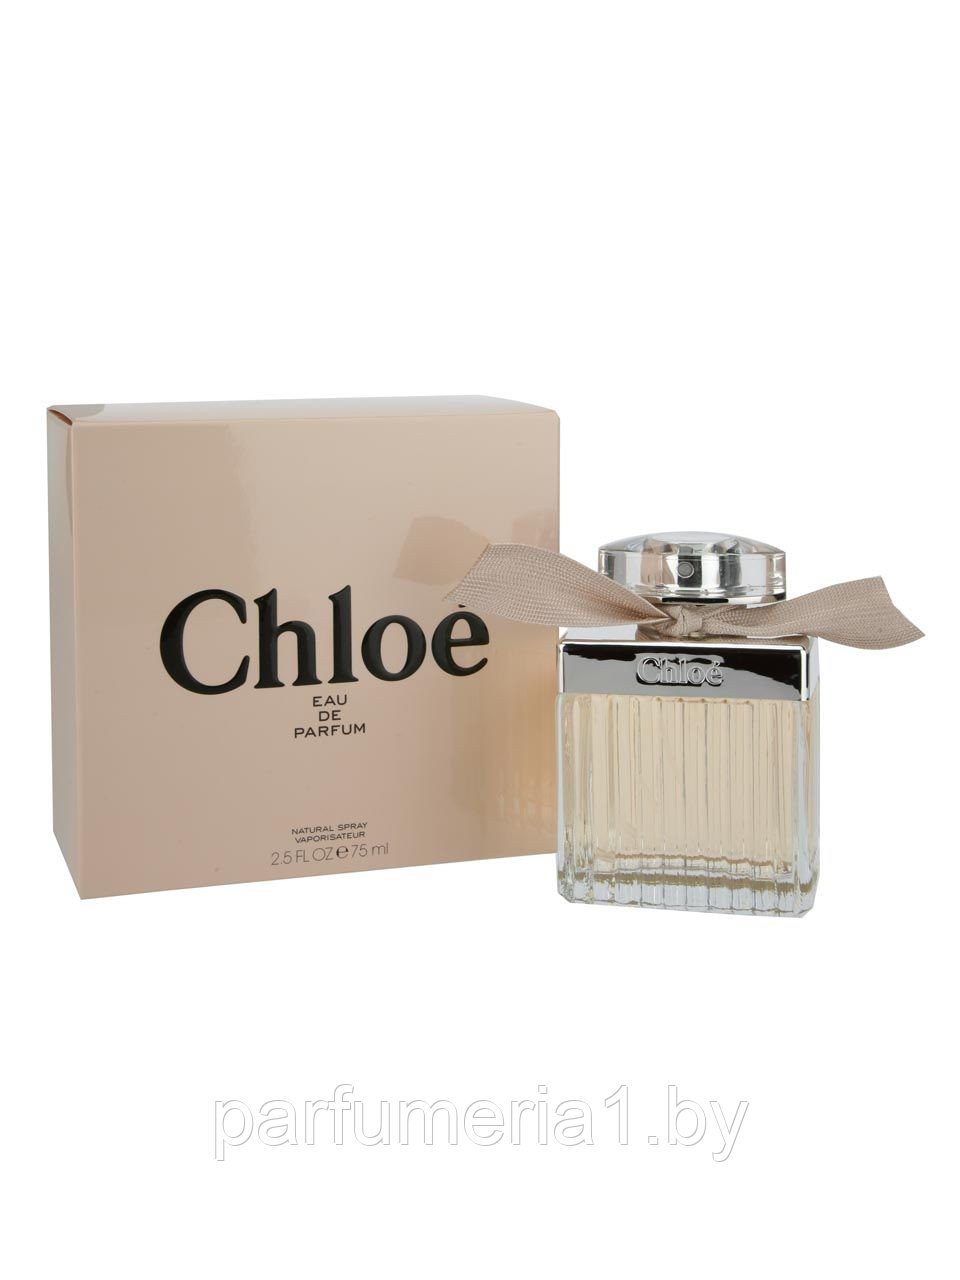  Chloe Eau de Parfum